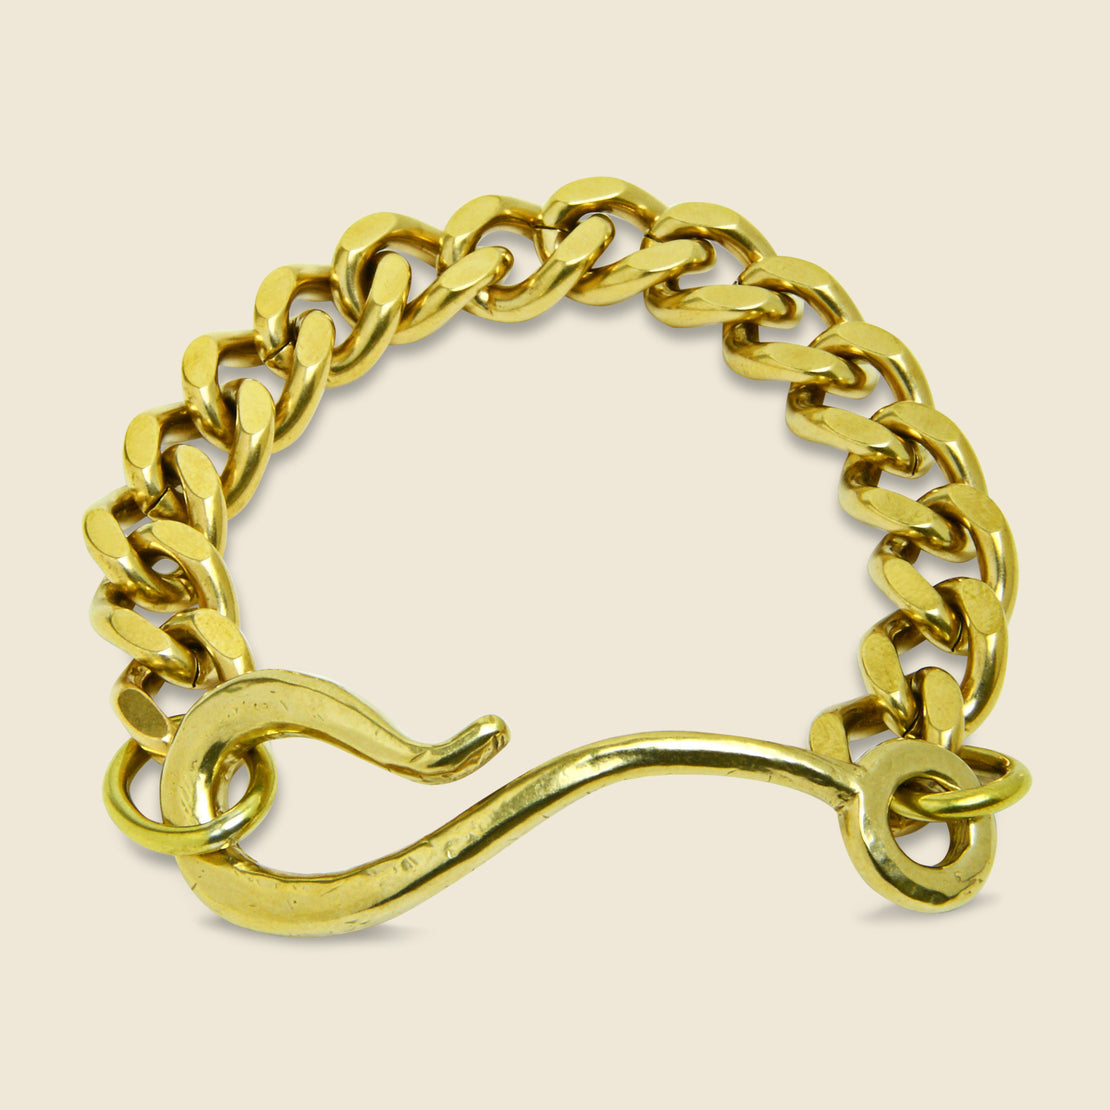 LHN Jewelry Large Hook Chain Bracelet - Brass